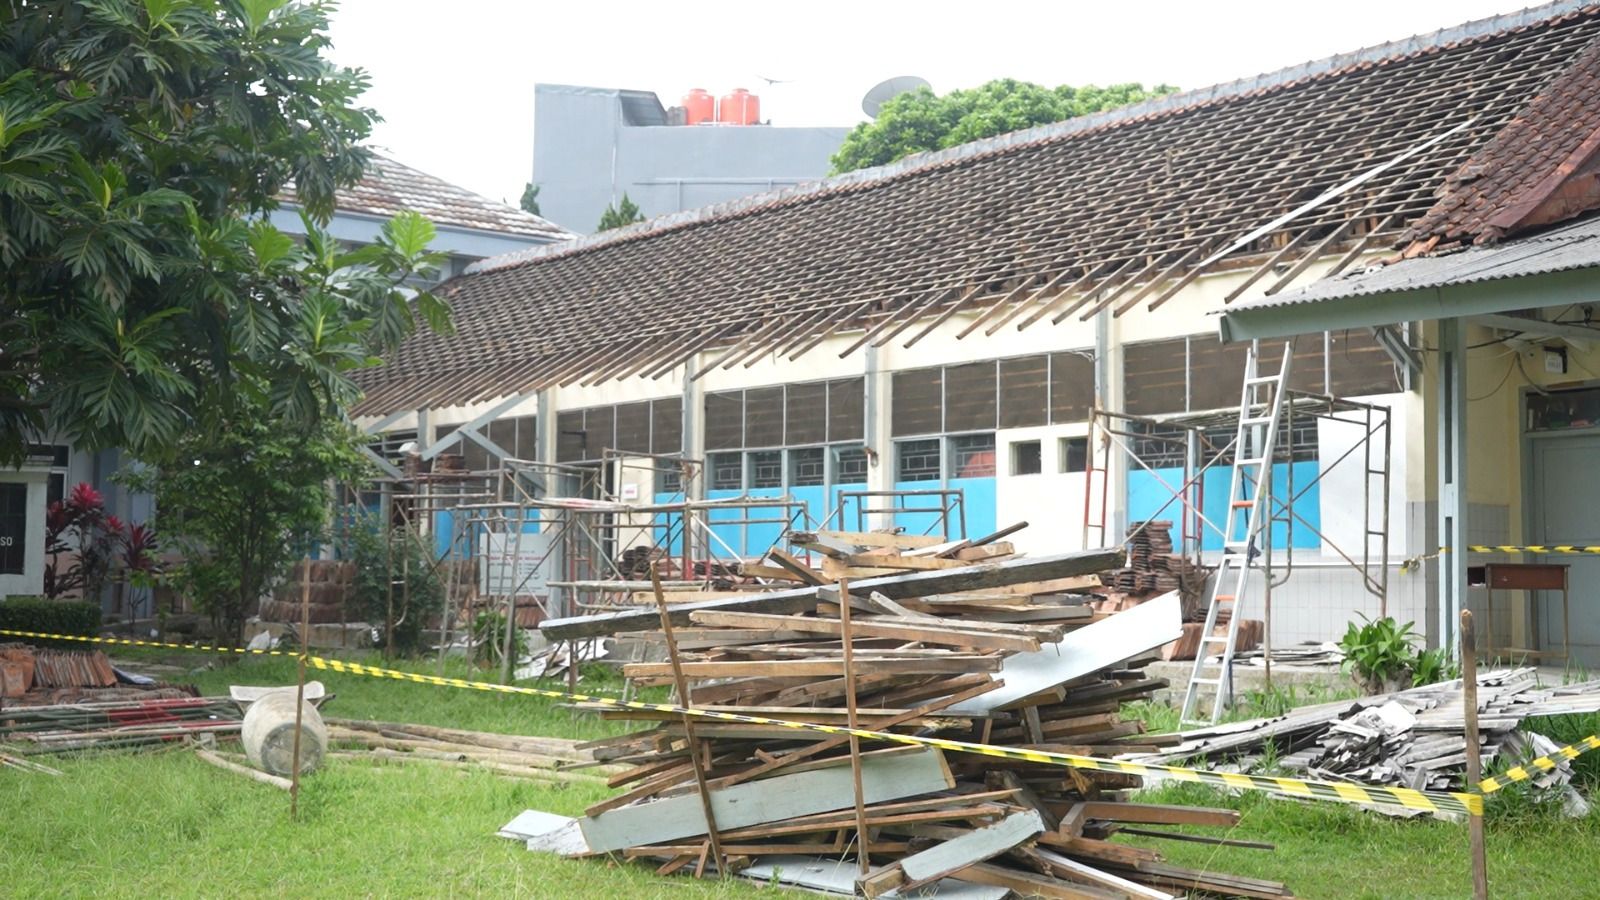 Kemensos Mulai Renovasi SLBN A Pajajaran Bandung, Kepala Sekolah Terharu dan Sampaikan Apresiasi kepada Mensos